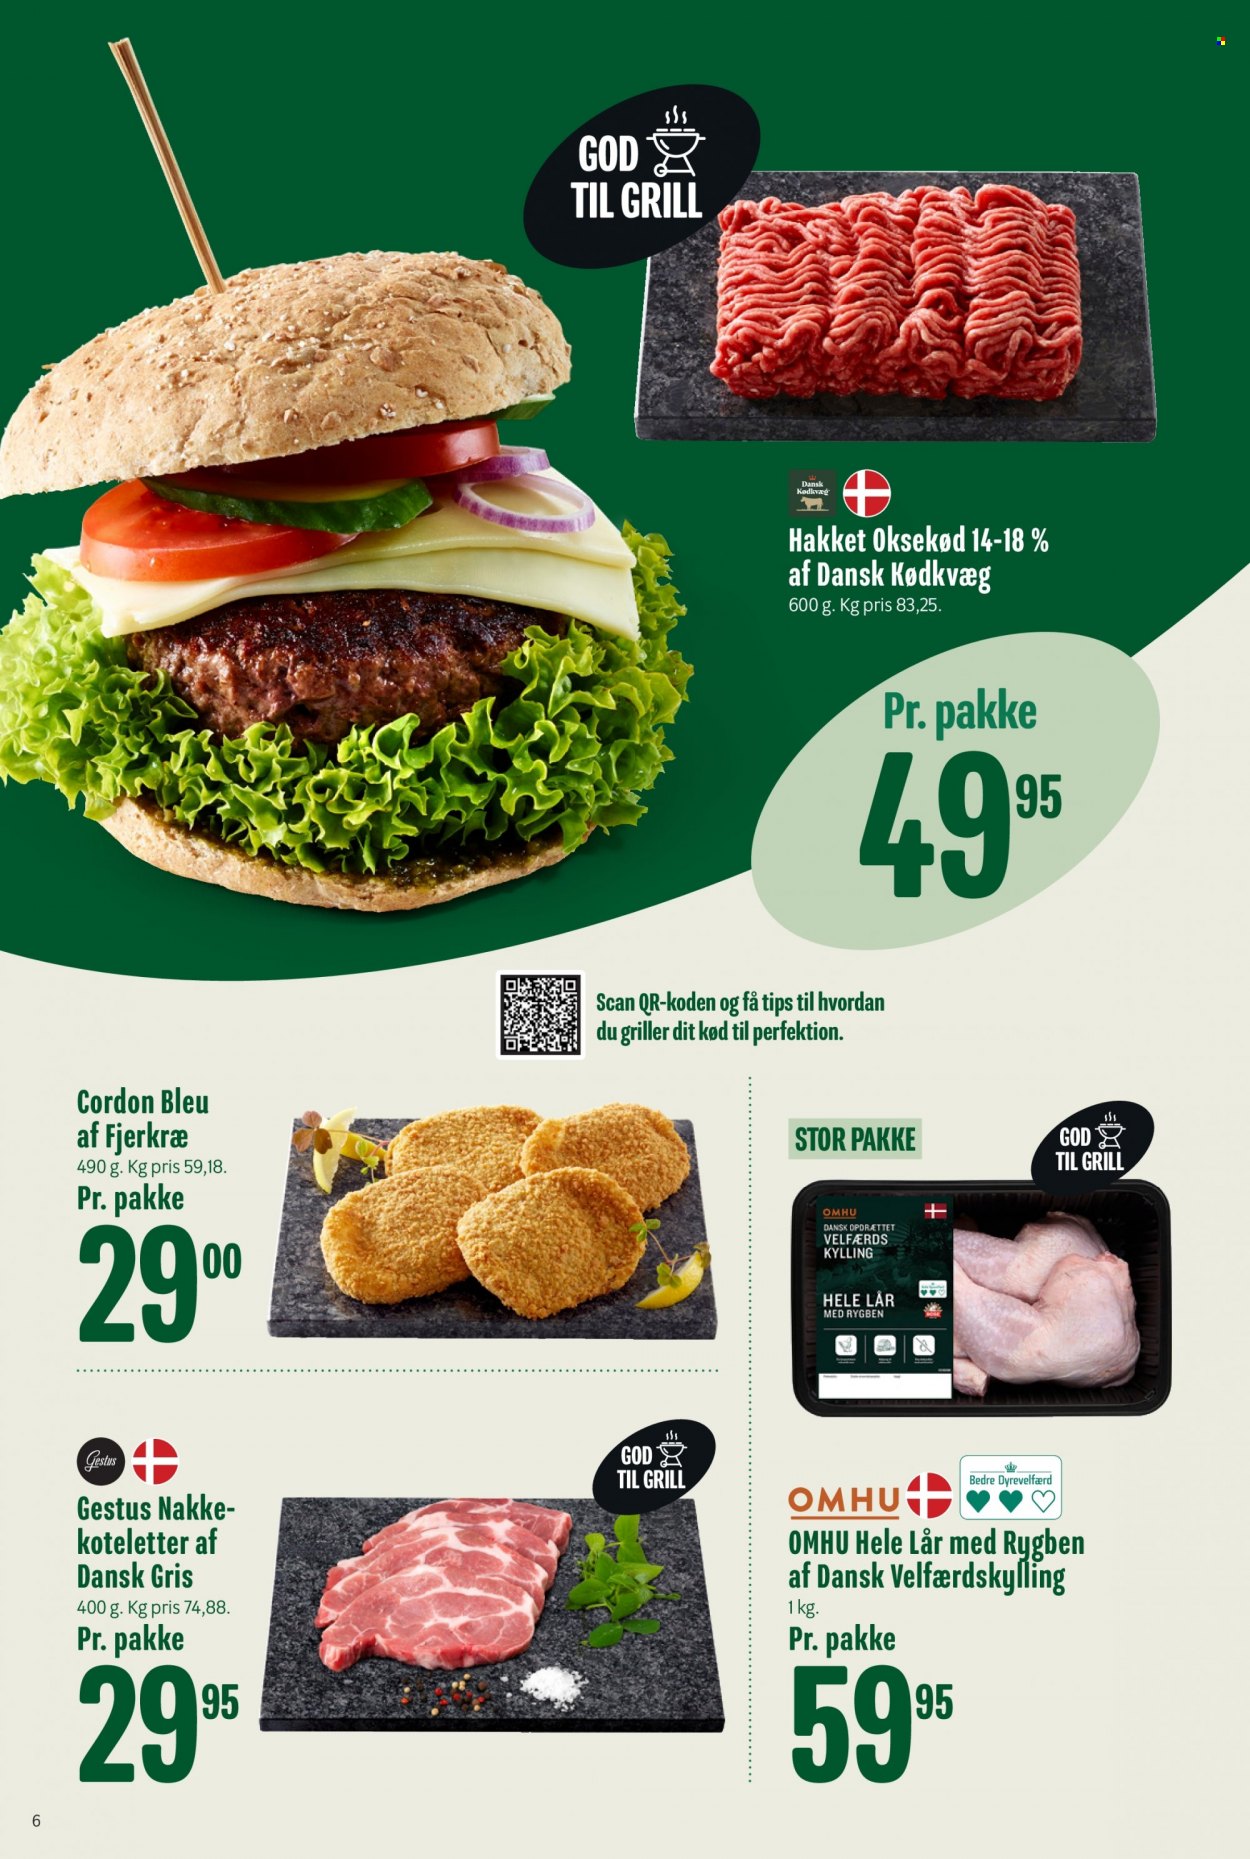 thumbnail - Min Købmand tilbud  - 6.8.2022 - 12.8.2022 - tilbudsprodukter - hakket oksekød, koteletter, oksekød, dansk gris, kylling, Cordon bleu. Side 6.